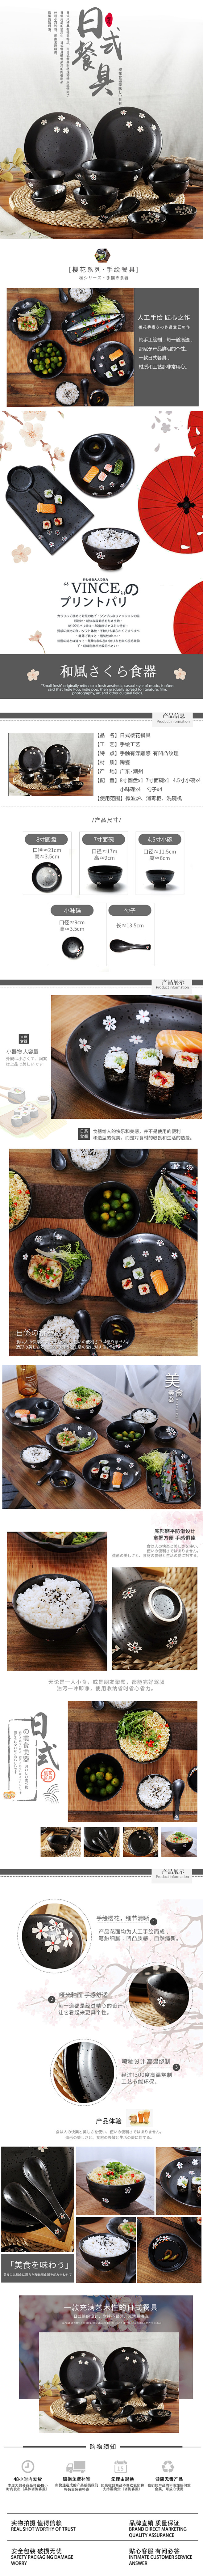 日式餐具